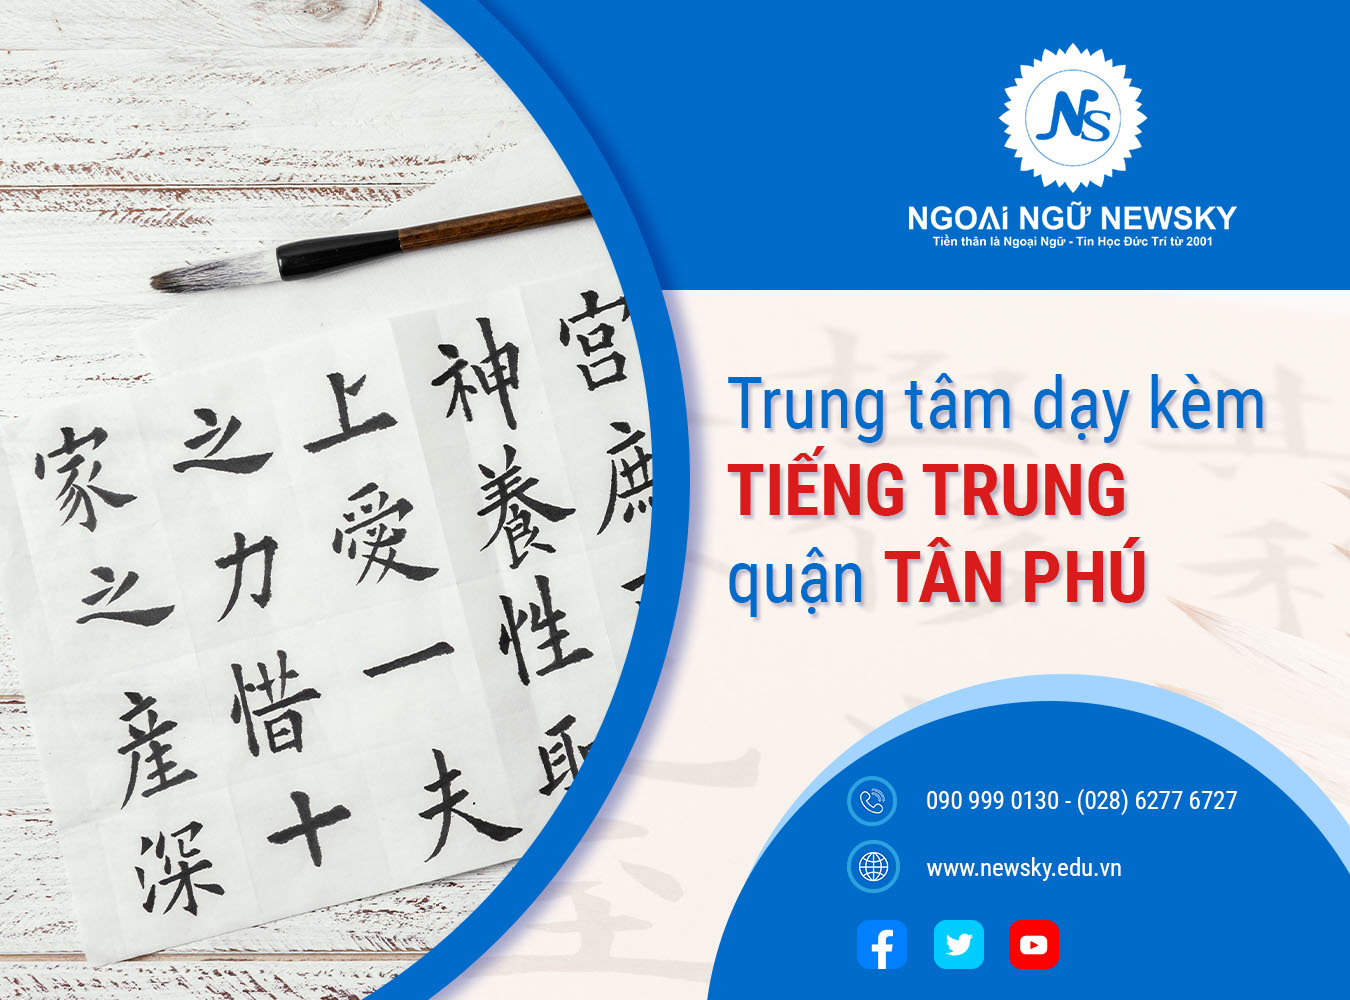 Trung tâm dạy kèm tiếng Trung uy tín quận Tân Phú